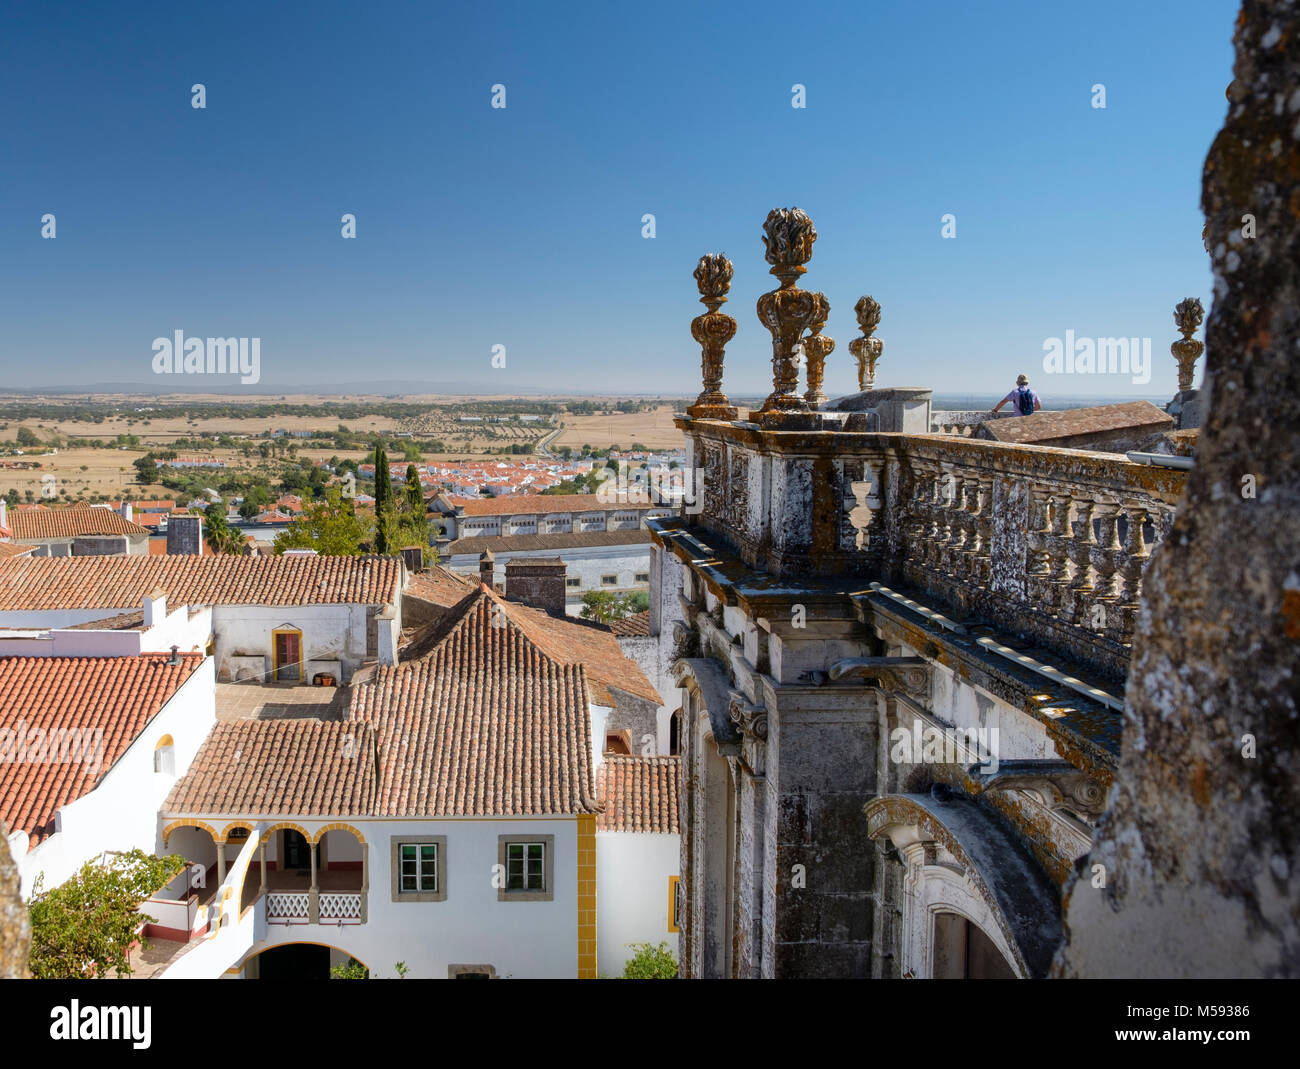 La tour de la cathédrale d'Évora, vues de l'Alentejo, Evora, Portugal Banque D'Images